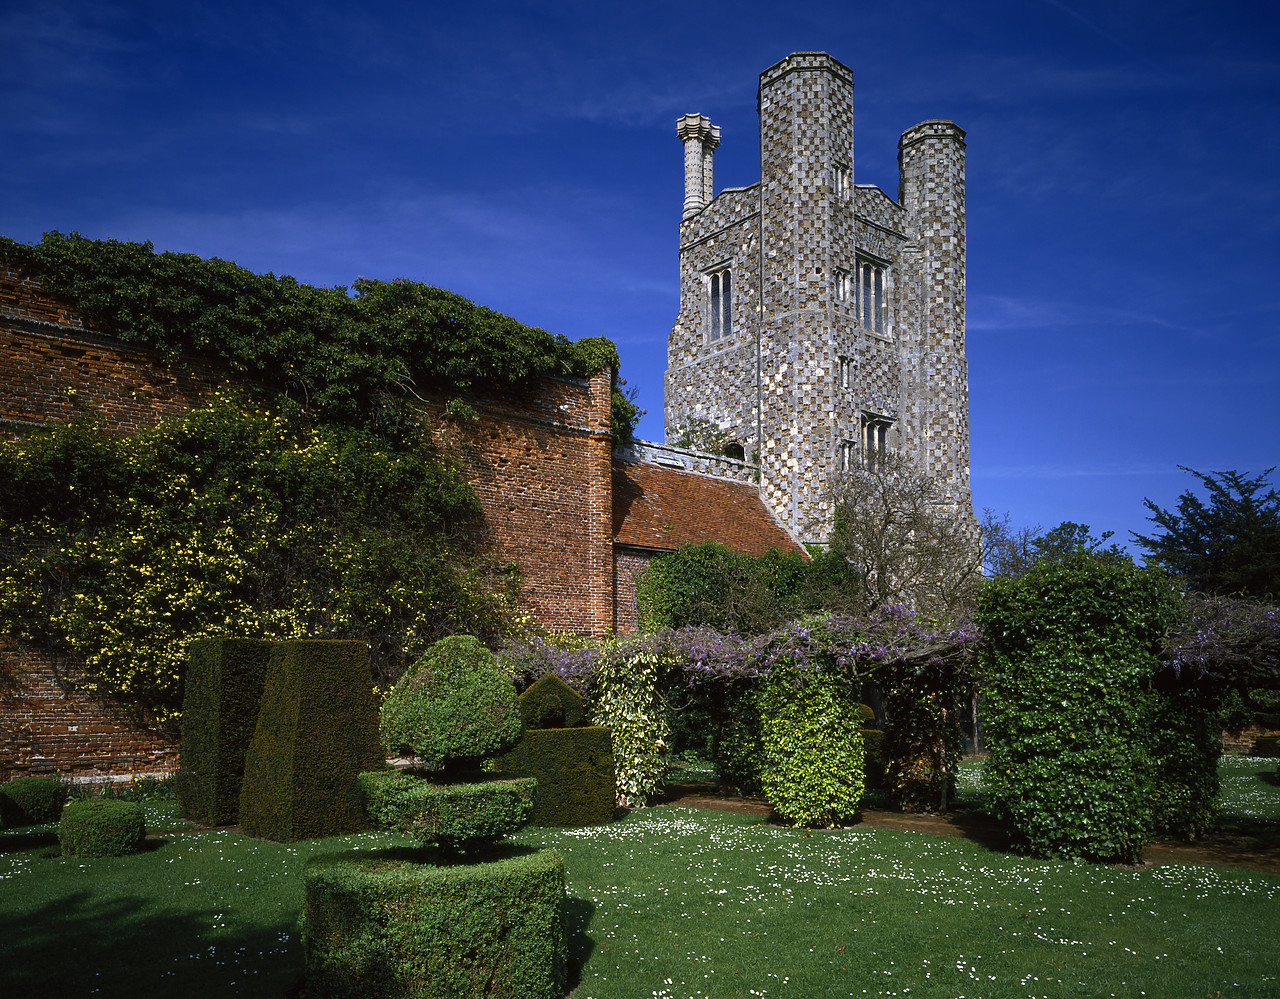 #944547-1 - St. Osyth Priory, St. Osyth, Essex, England